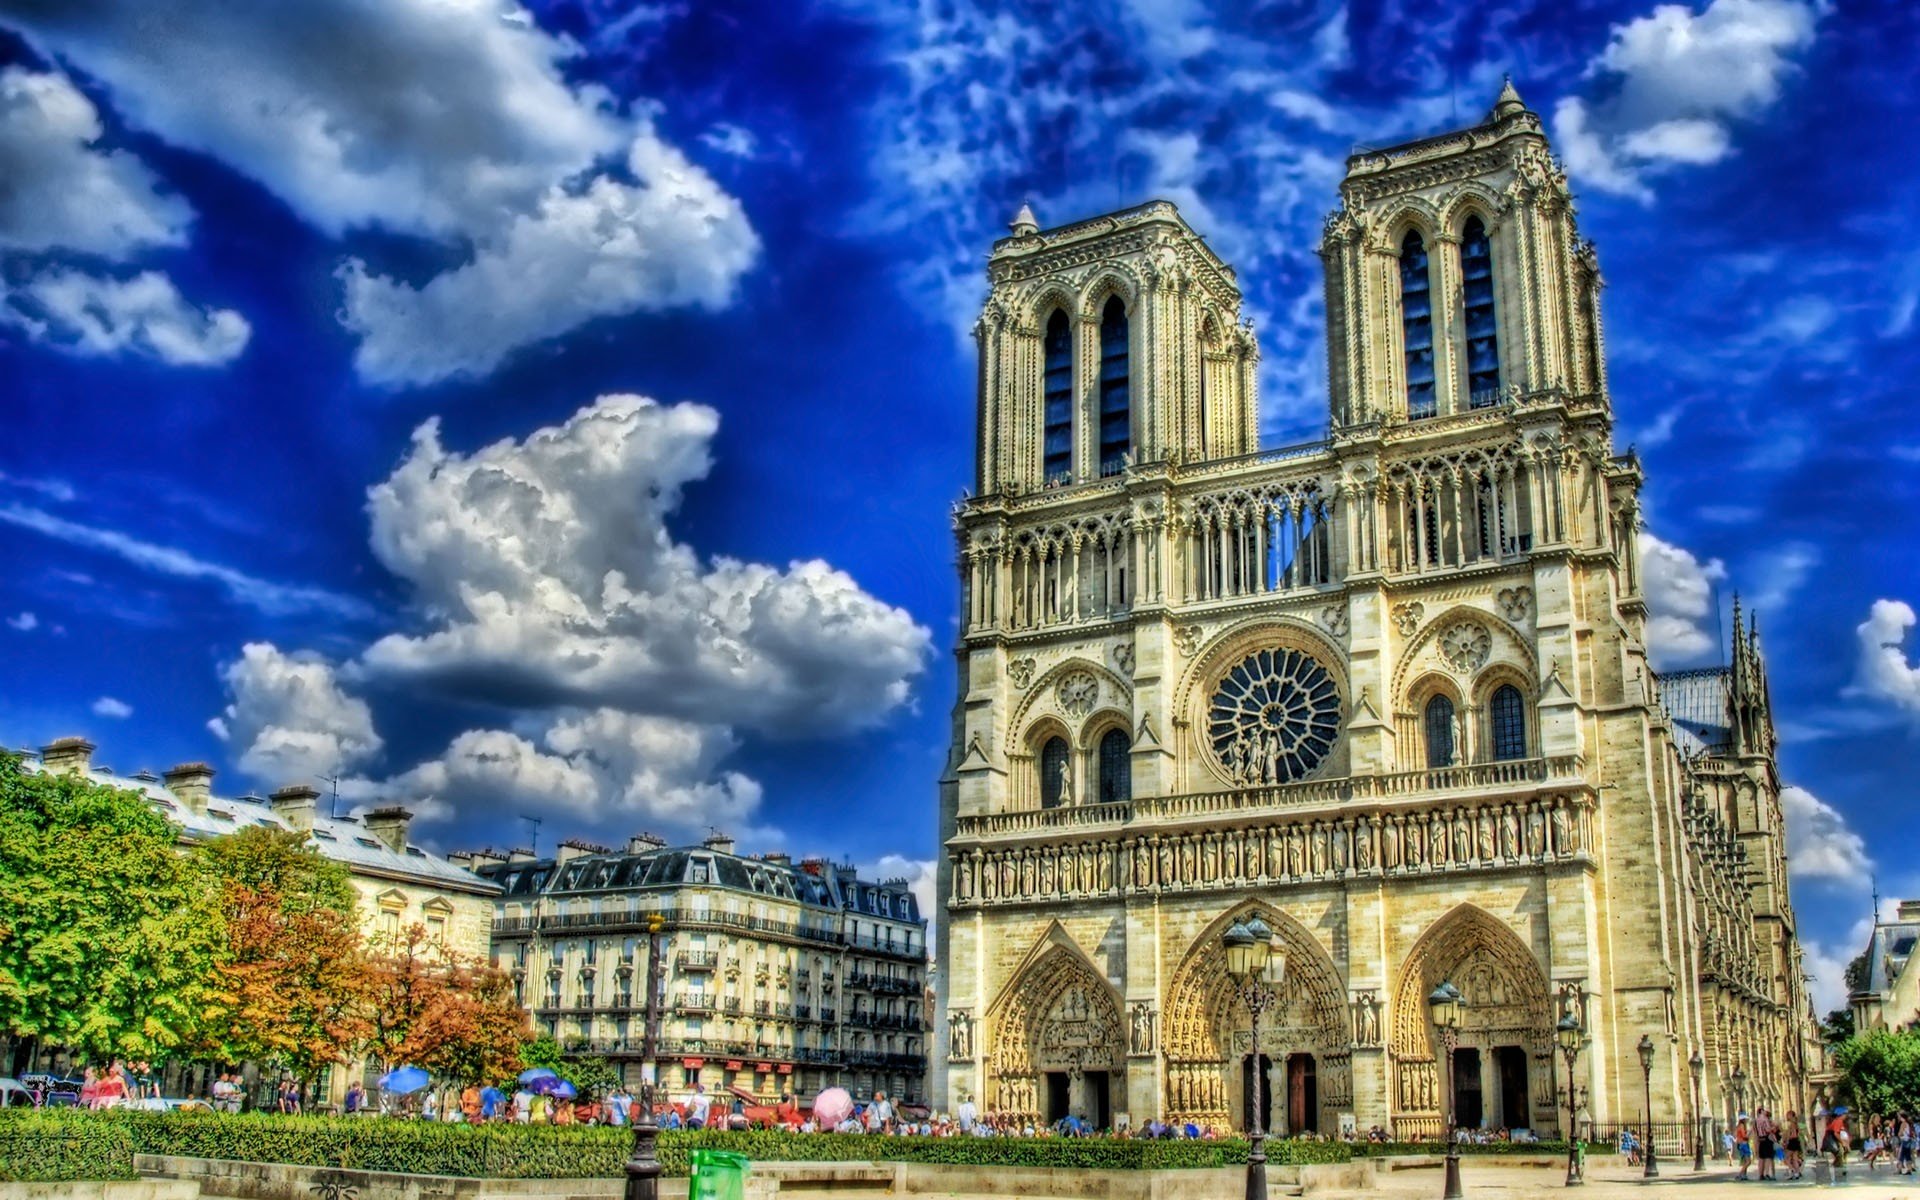 Best Notre Dame De Paris wallpaper ID:483673 for High Resolution hd 1920x1200 desktop